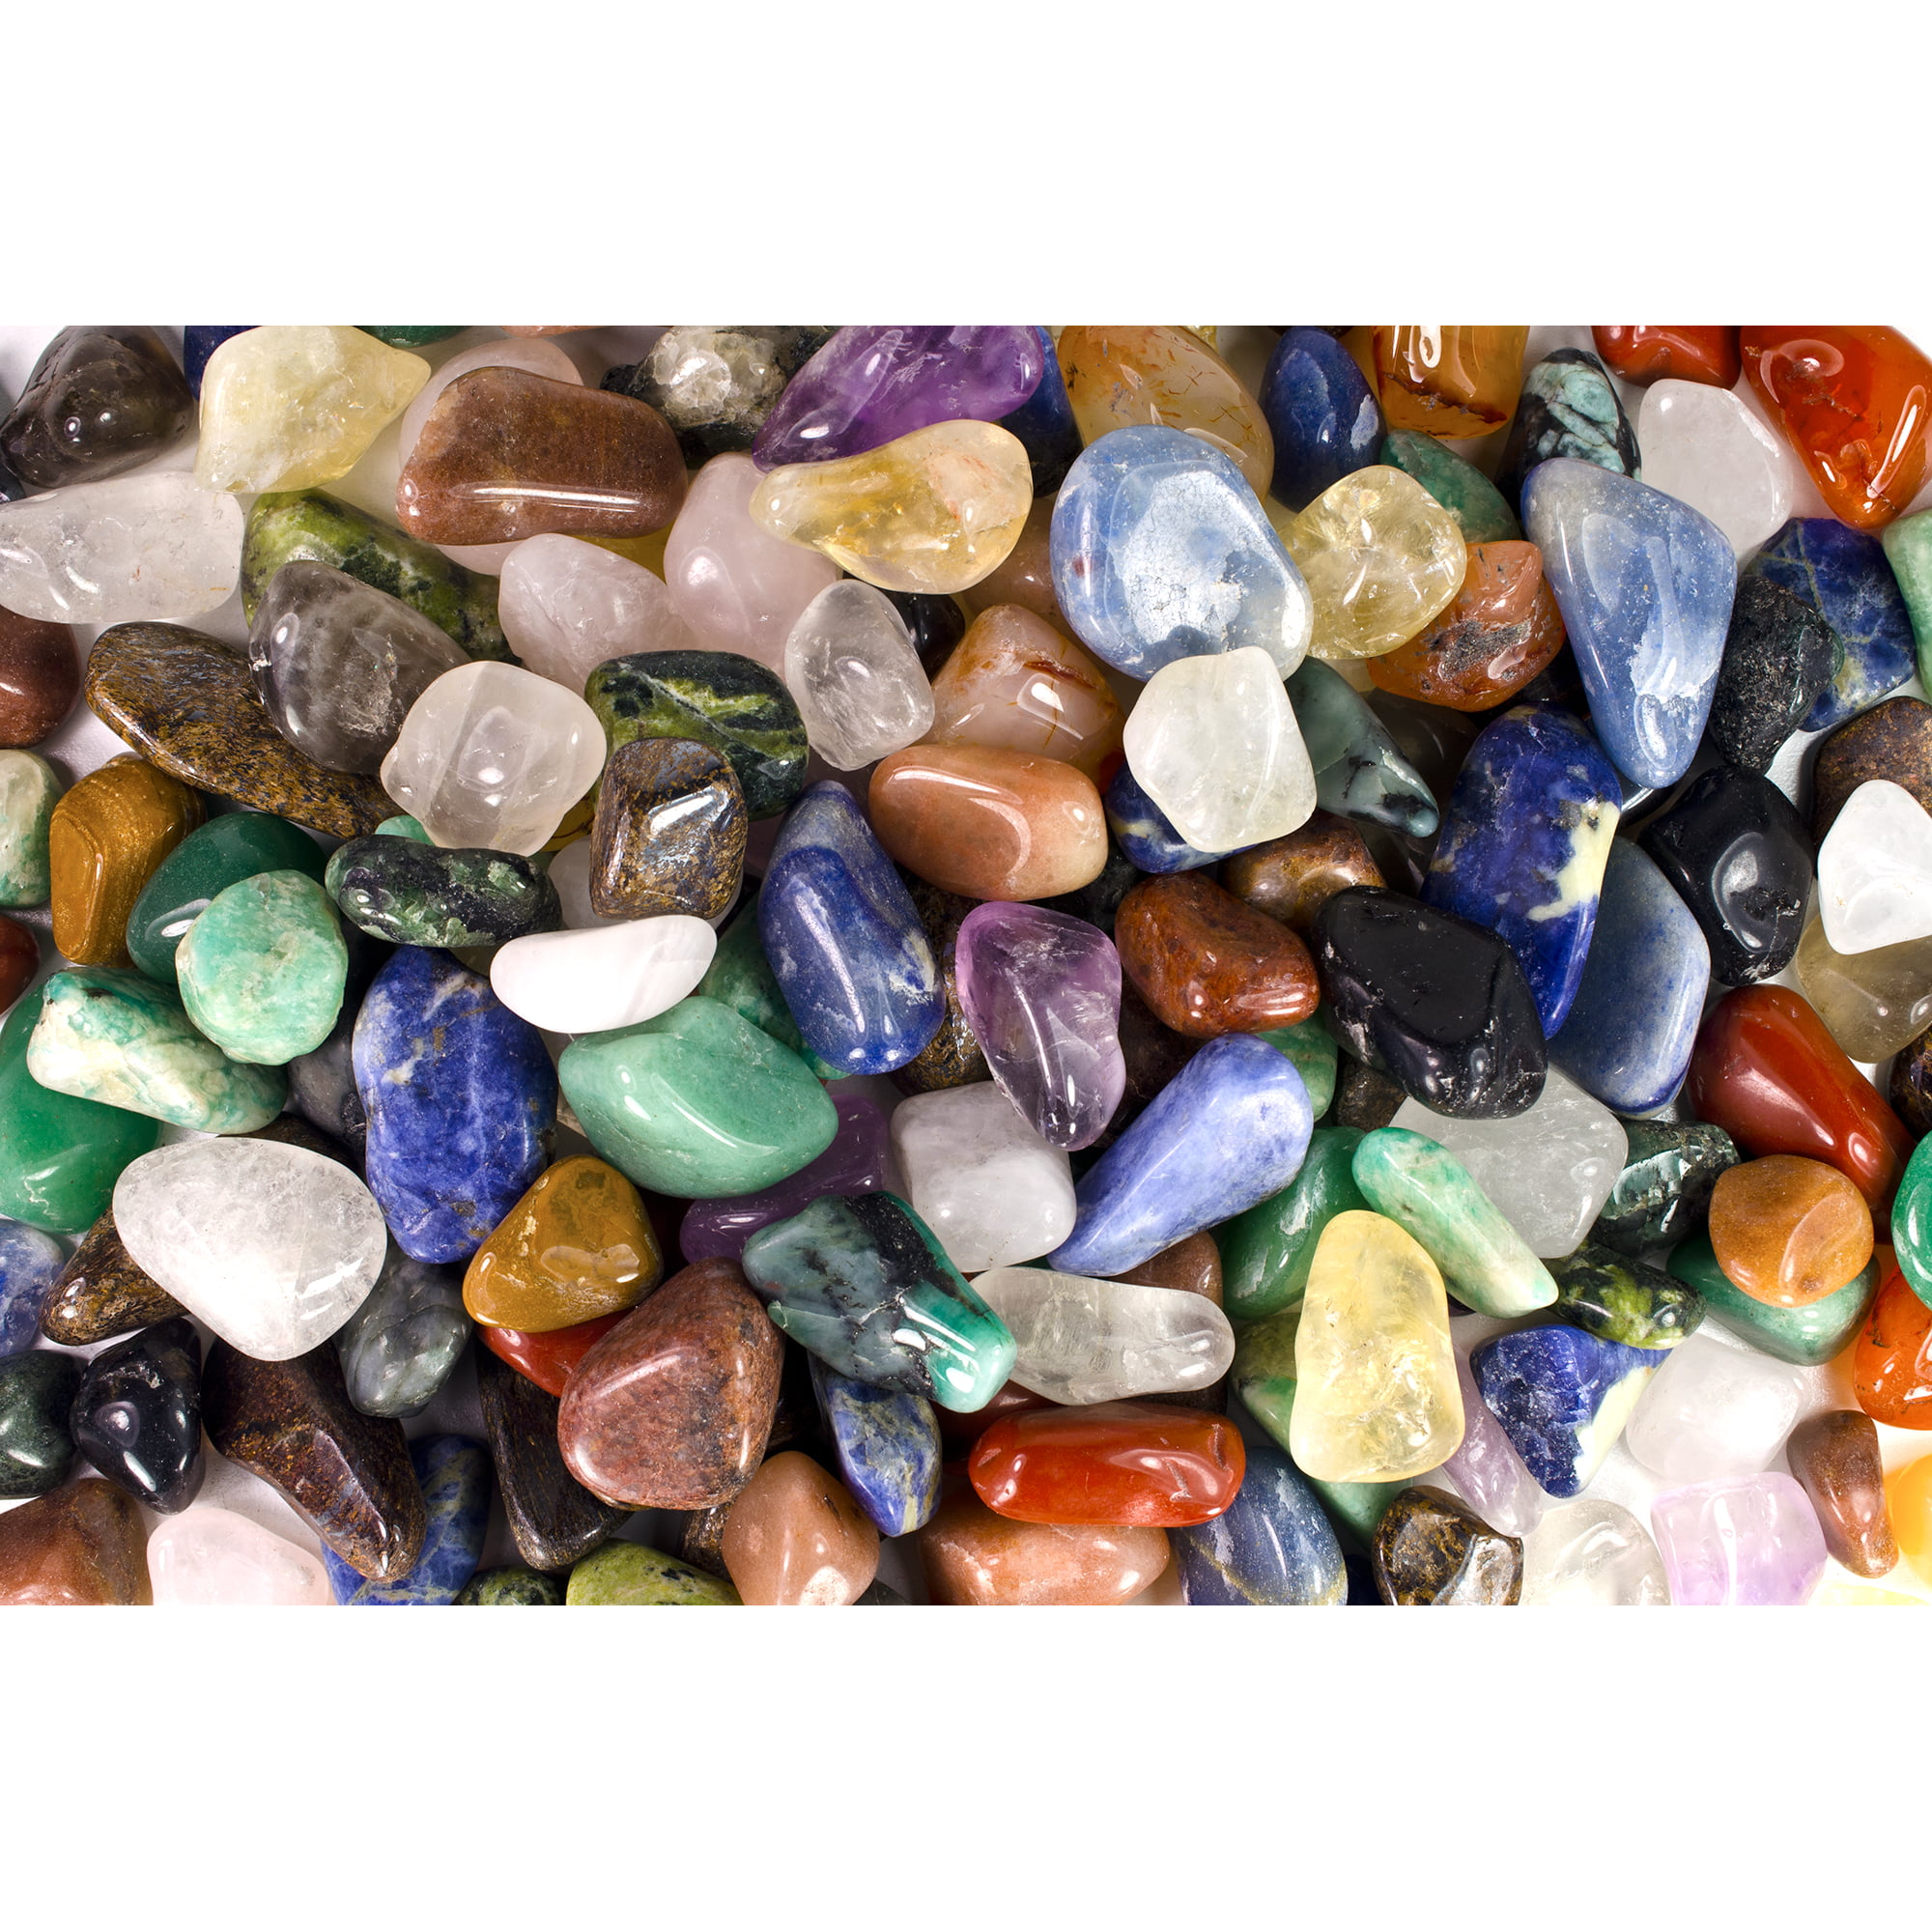 1/2lb Natural Clear Quartz Crystal Bulk Tumbled Mineral Rock Mineral Specimen 